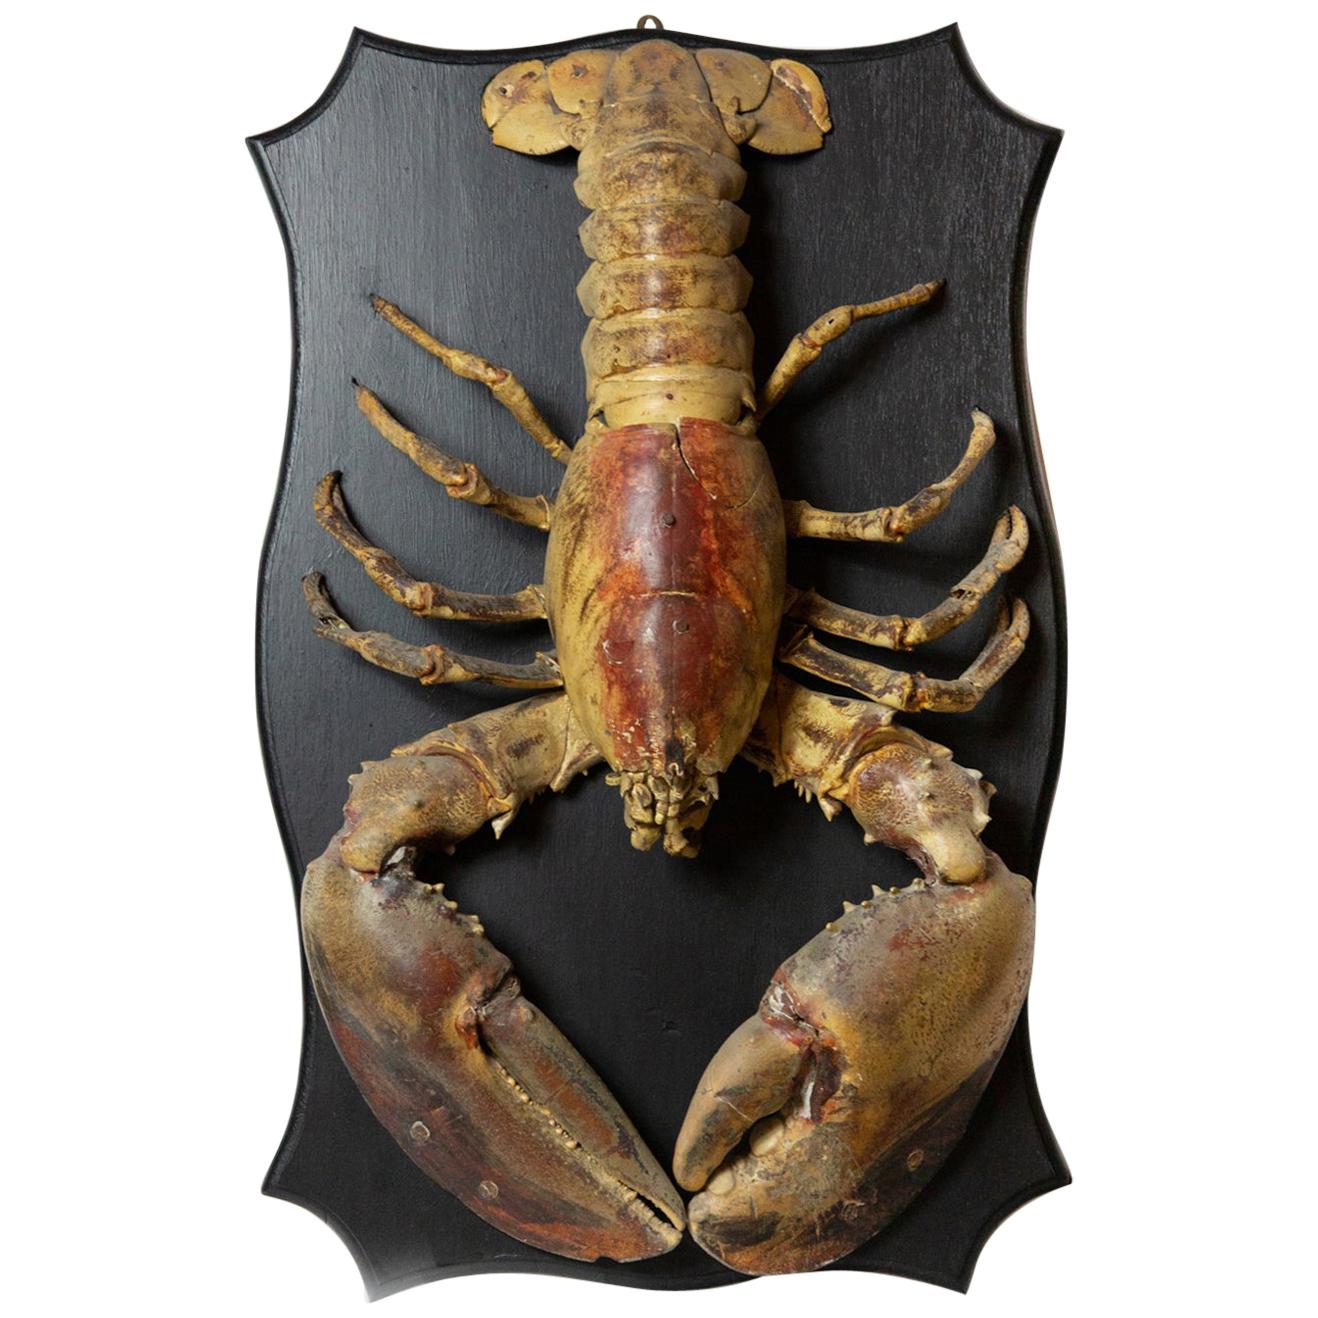 Big Ol' Lobster 'Vintage Hundred Year Old Lobster on Wood Plaque'